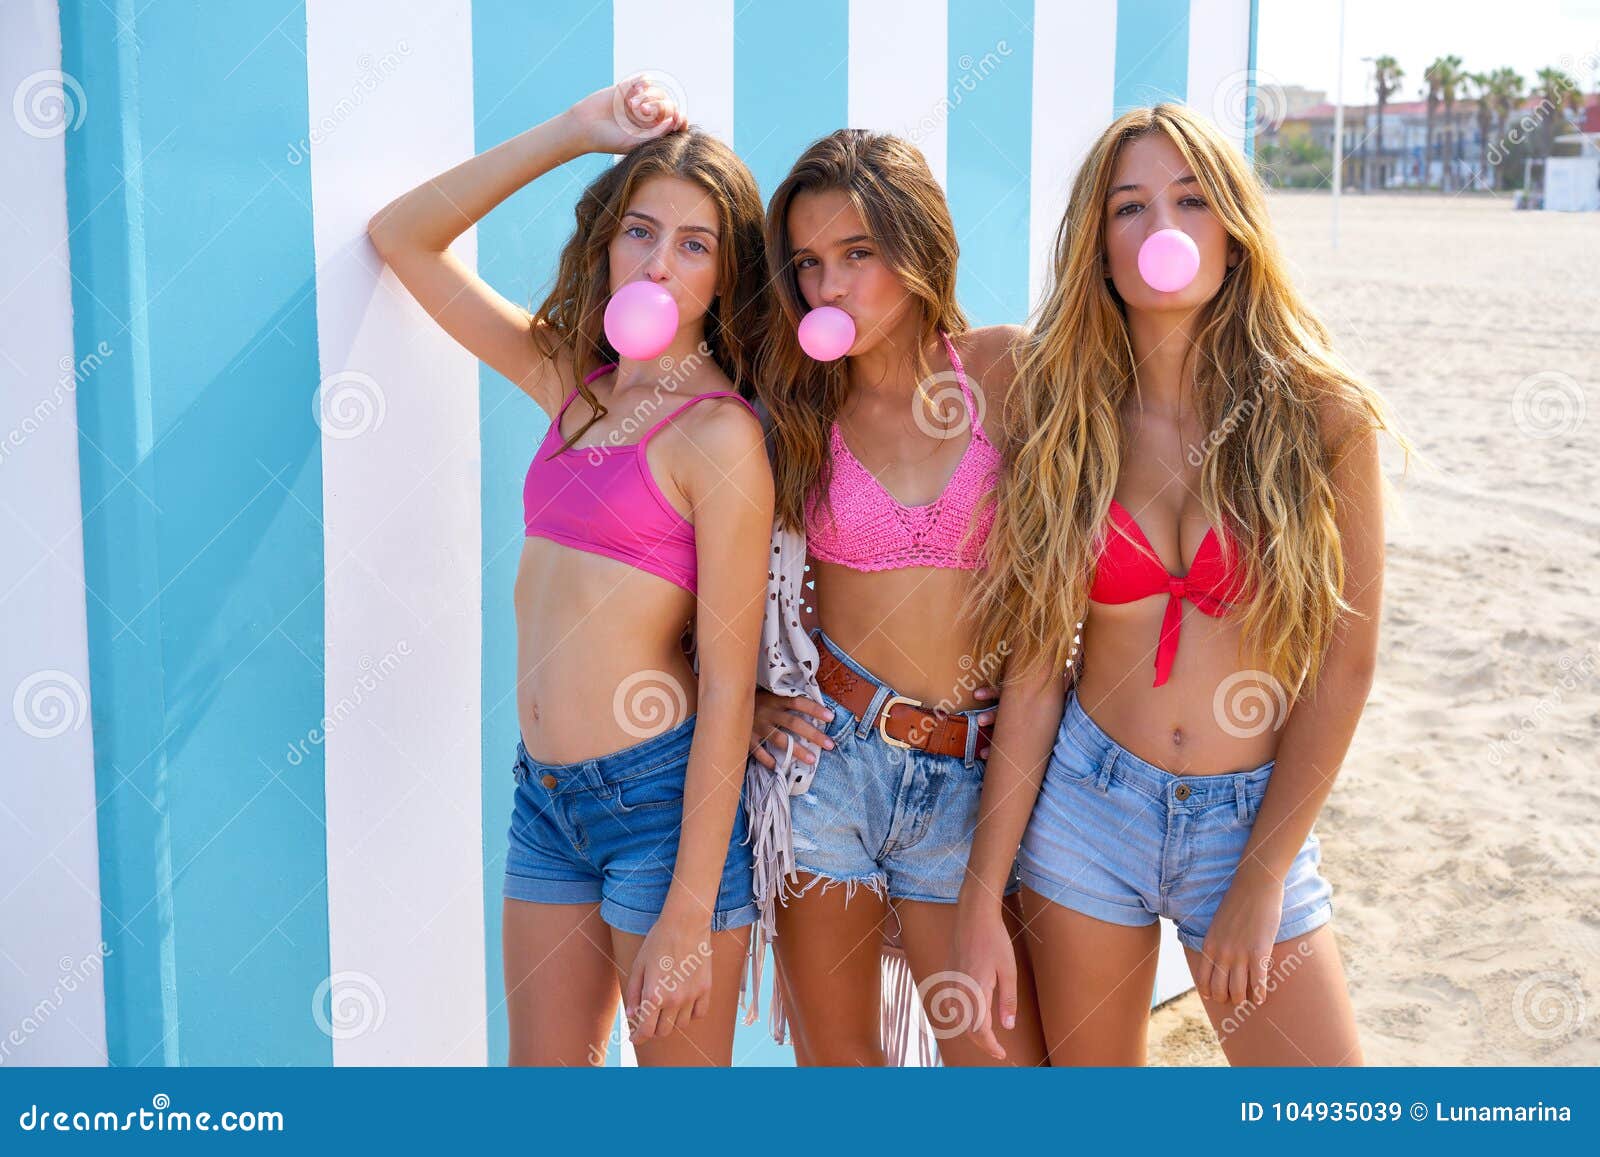 best friends teen girls group bubble gum